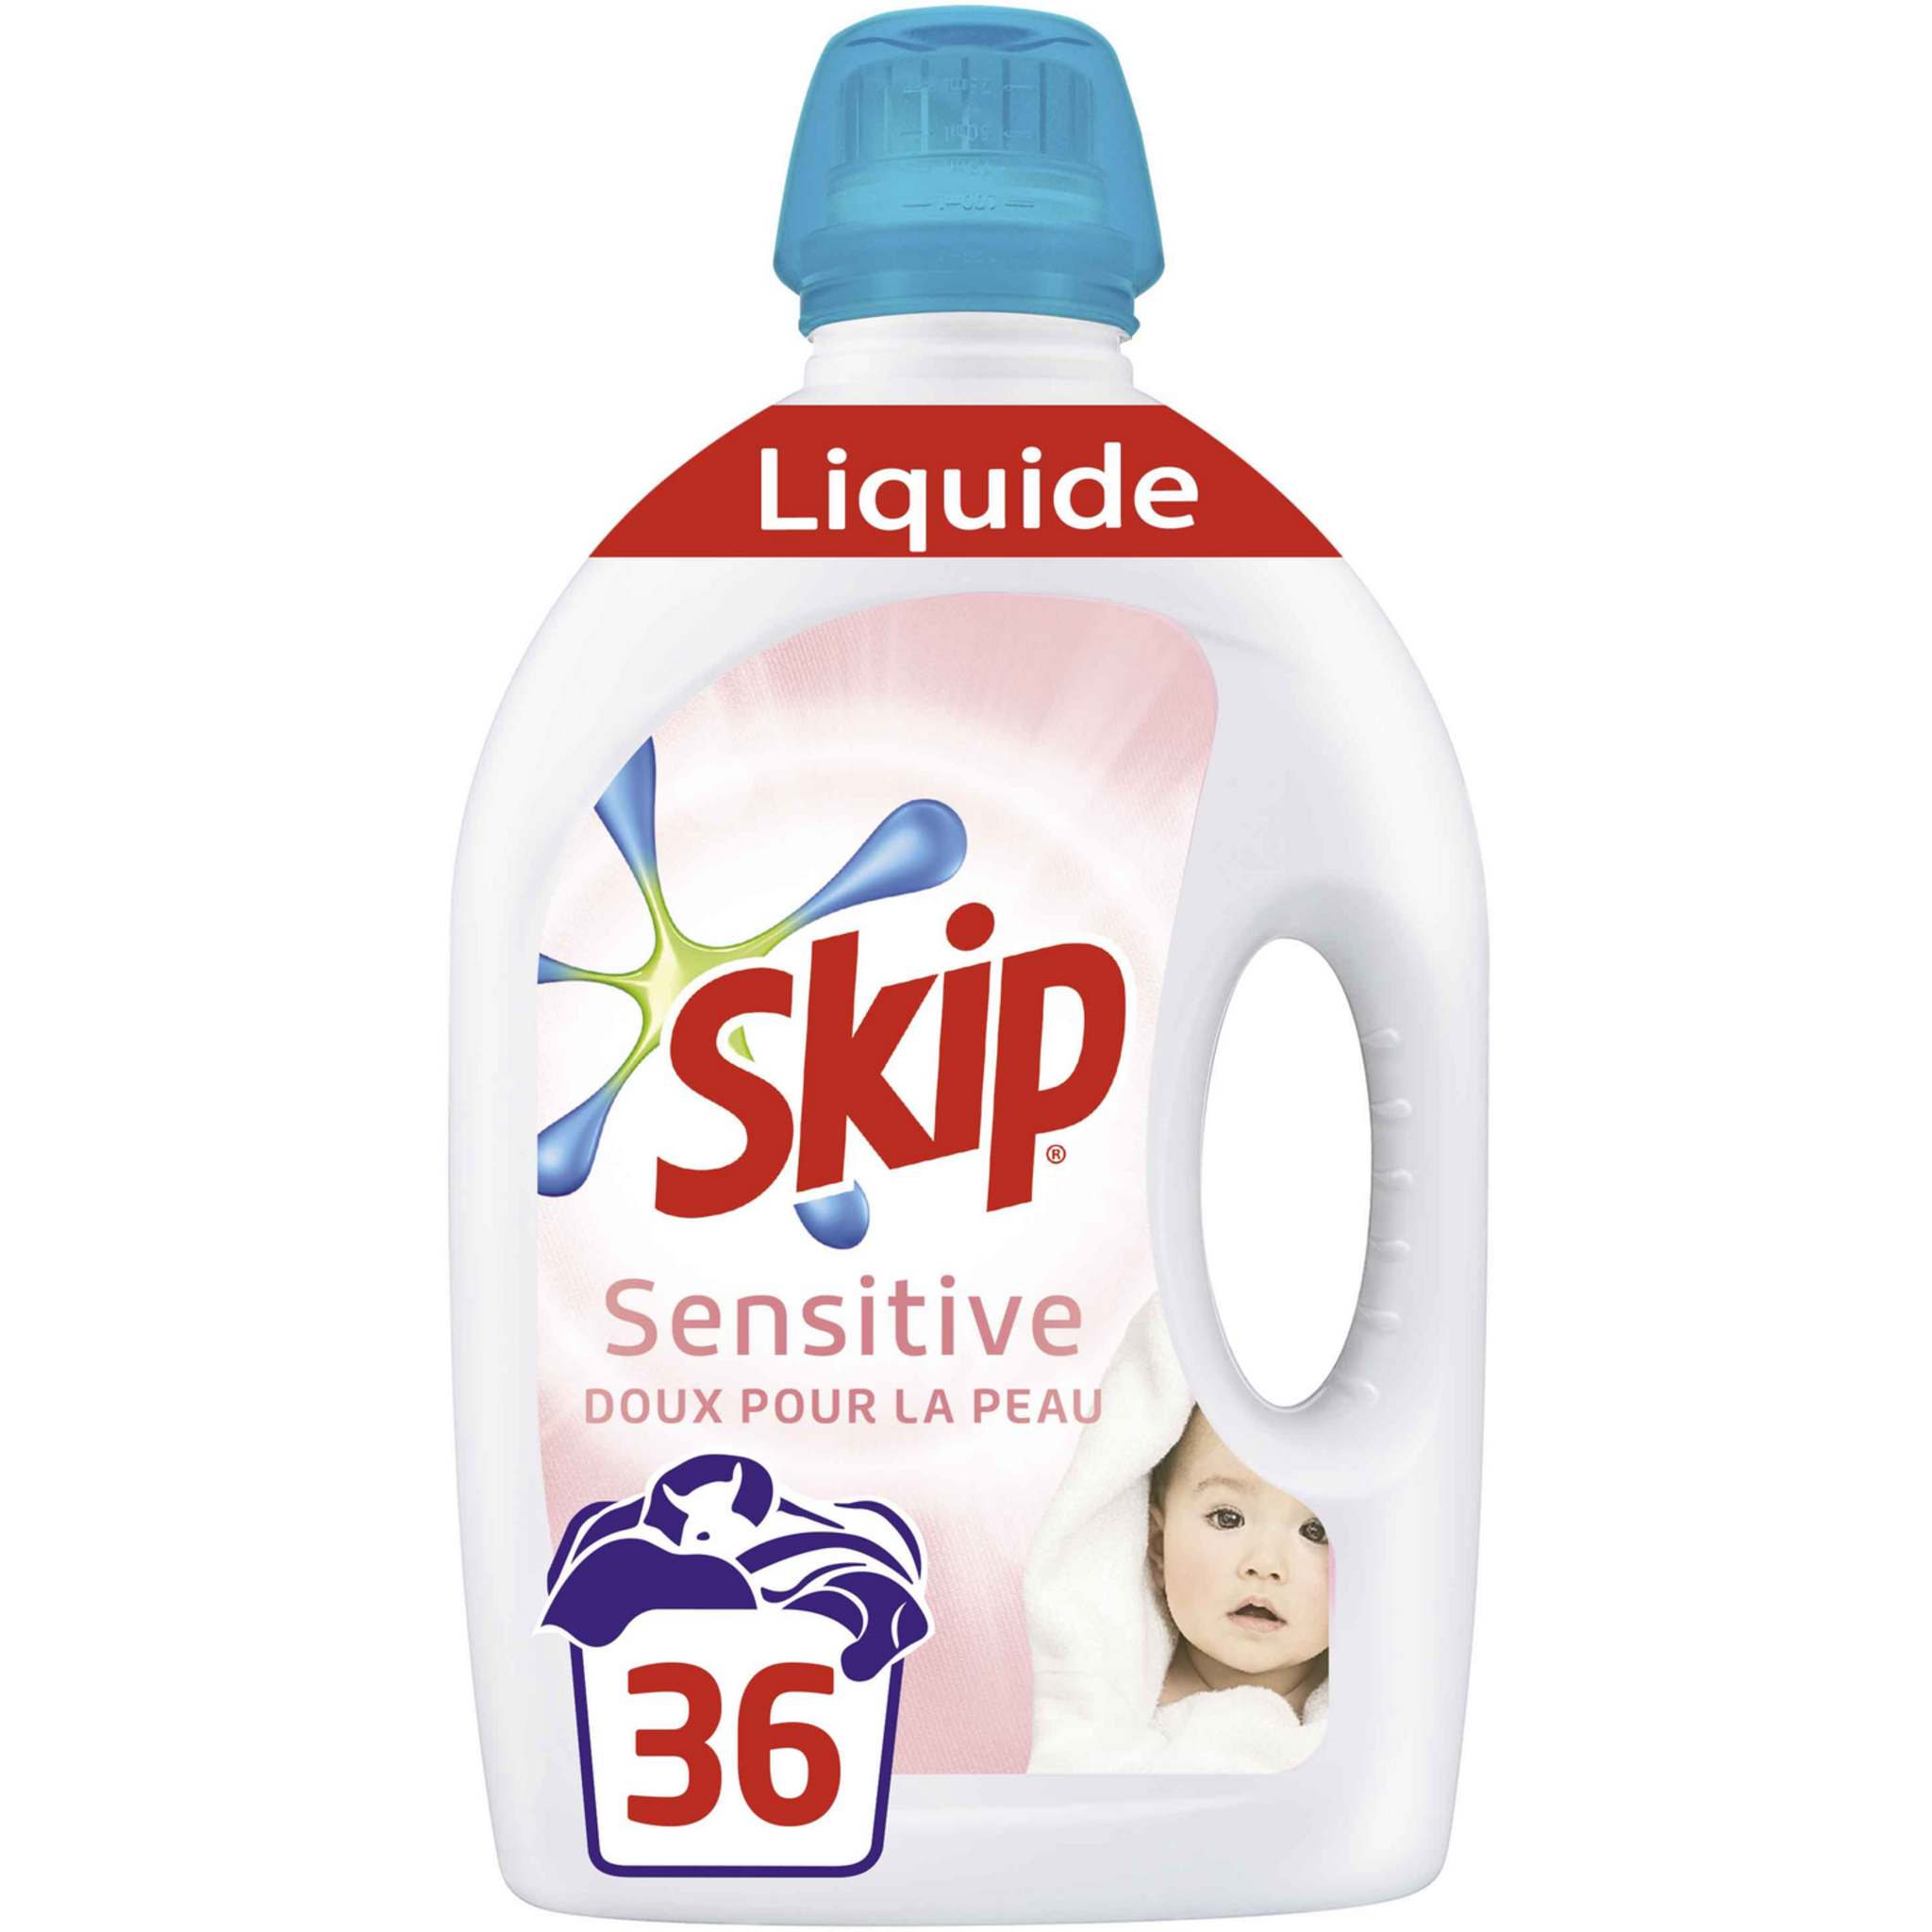 SKIP Skip Lessive liquide sensitive 36 lavages 1,8l 36 lavages 1,8l pas  cher 